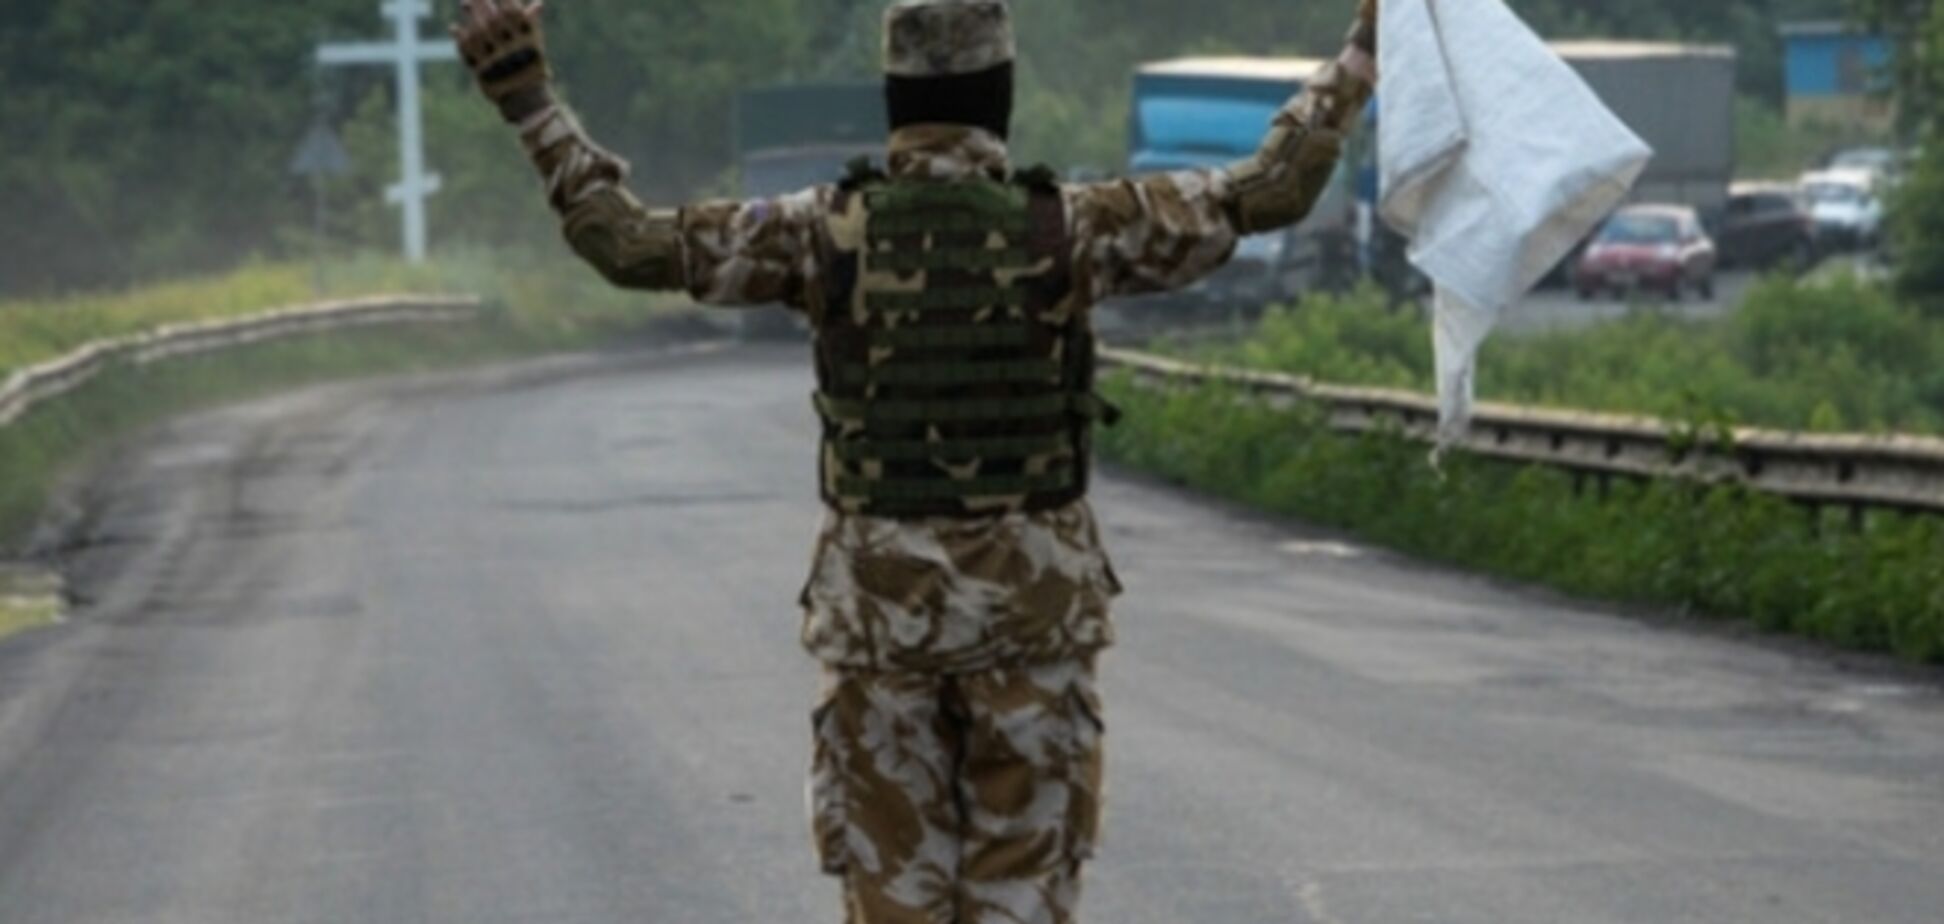 Цена непризнания агрессии России и 'мирного статуса' Украины: пленников боевиков де-юре не существует